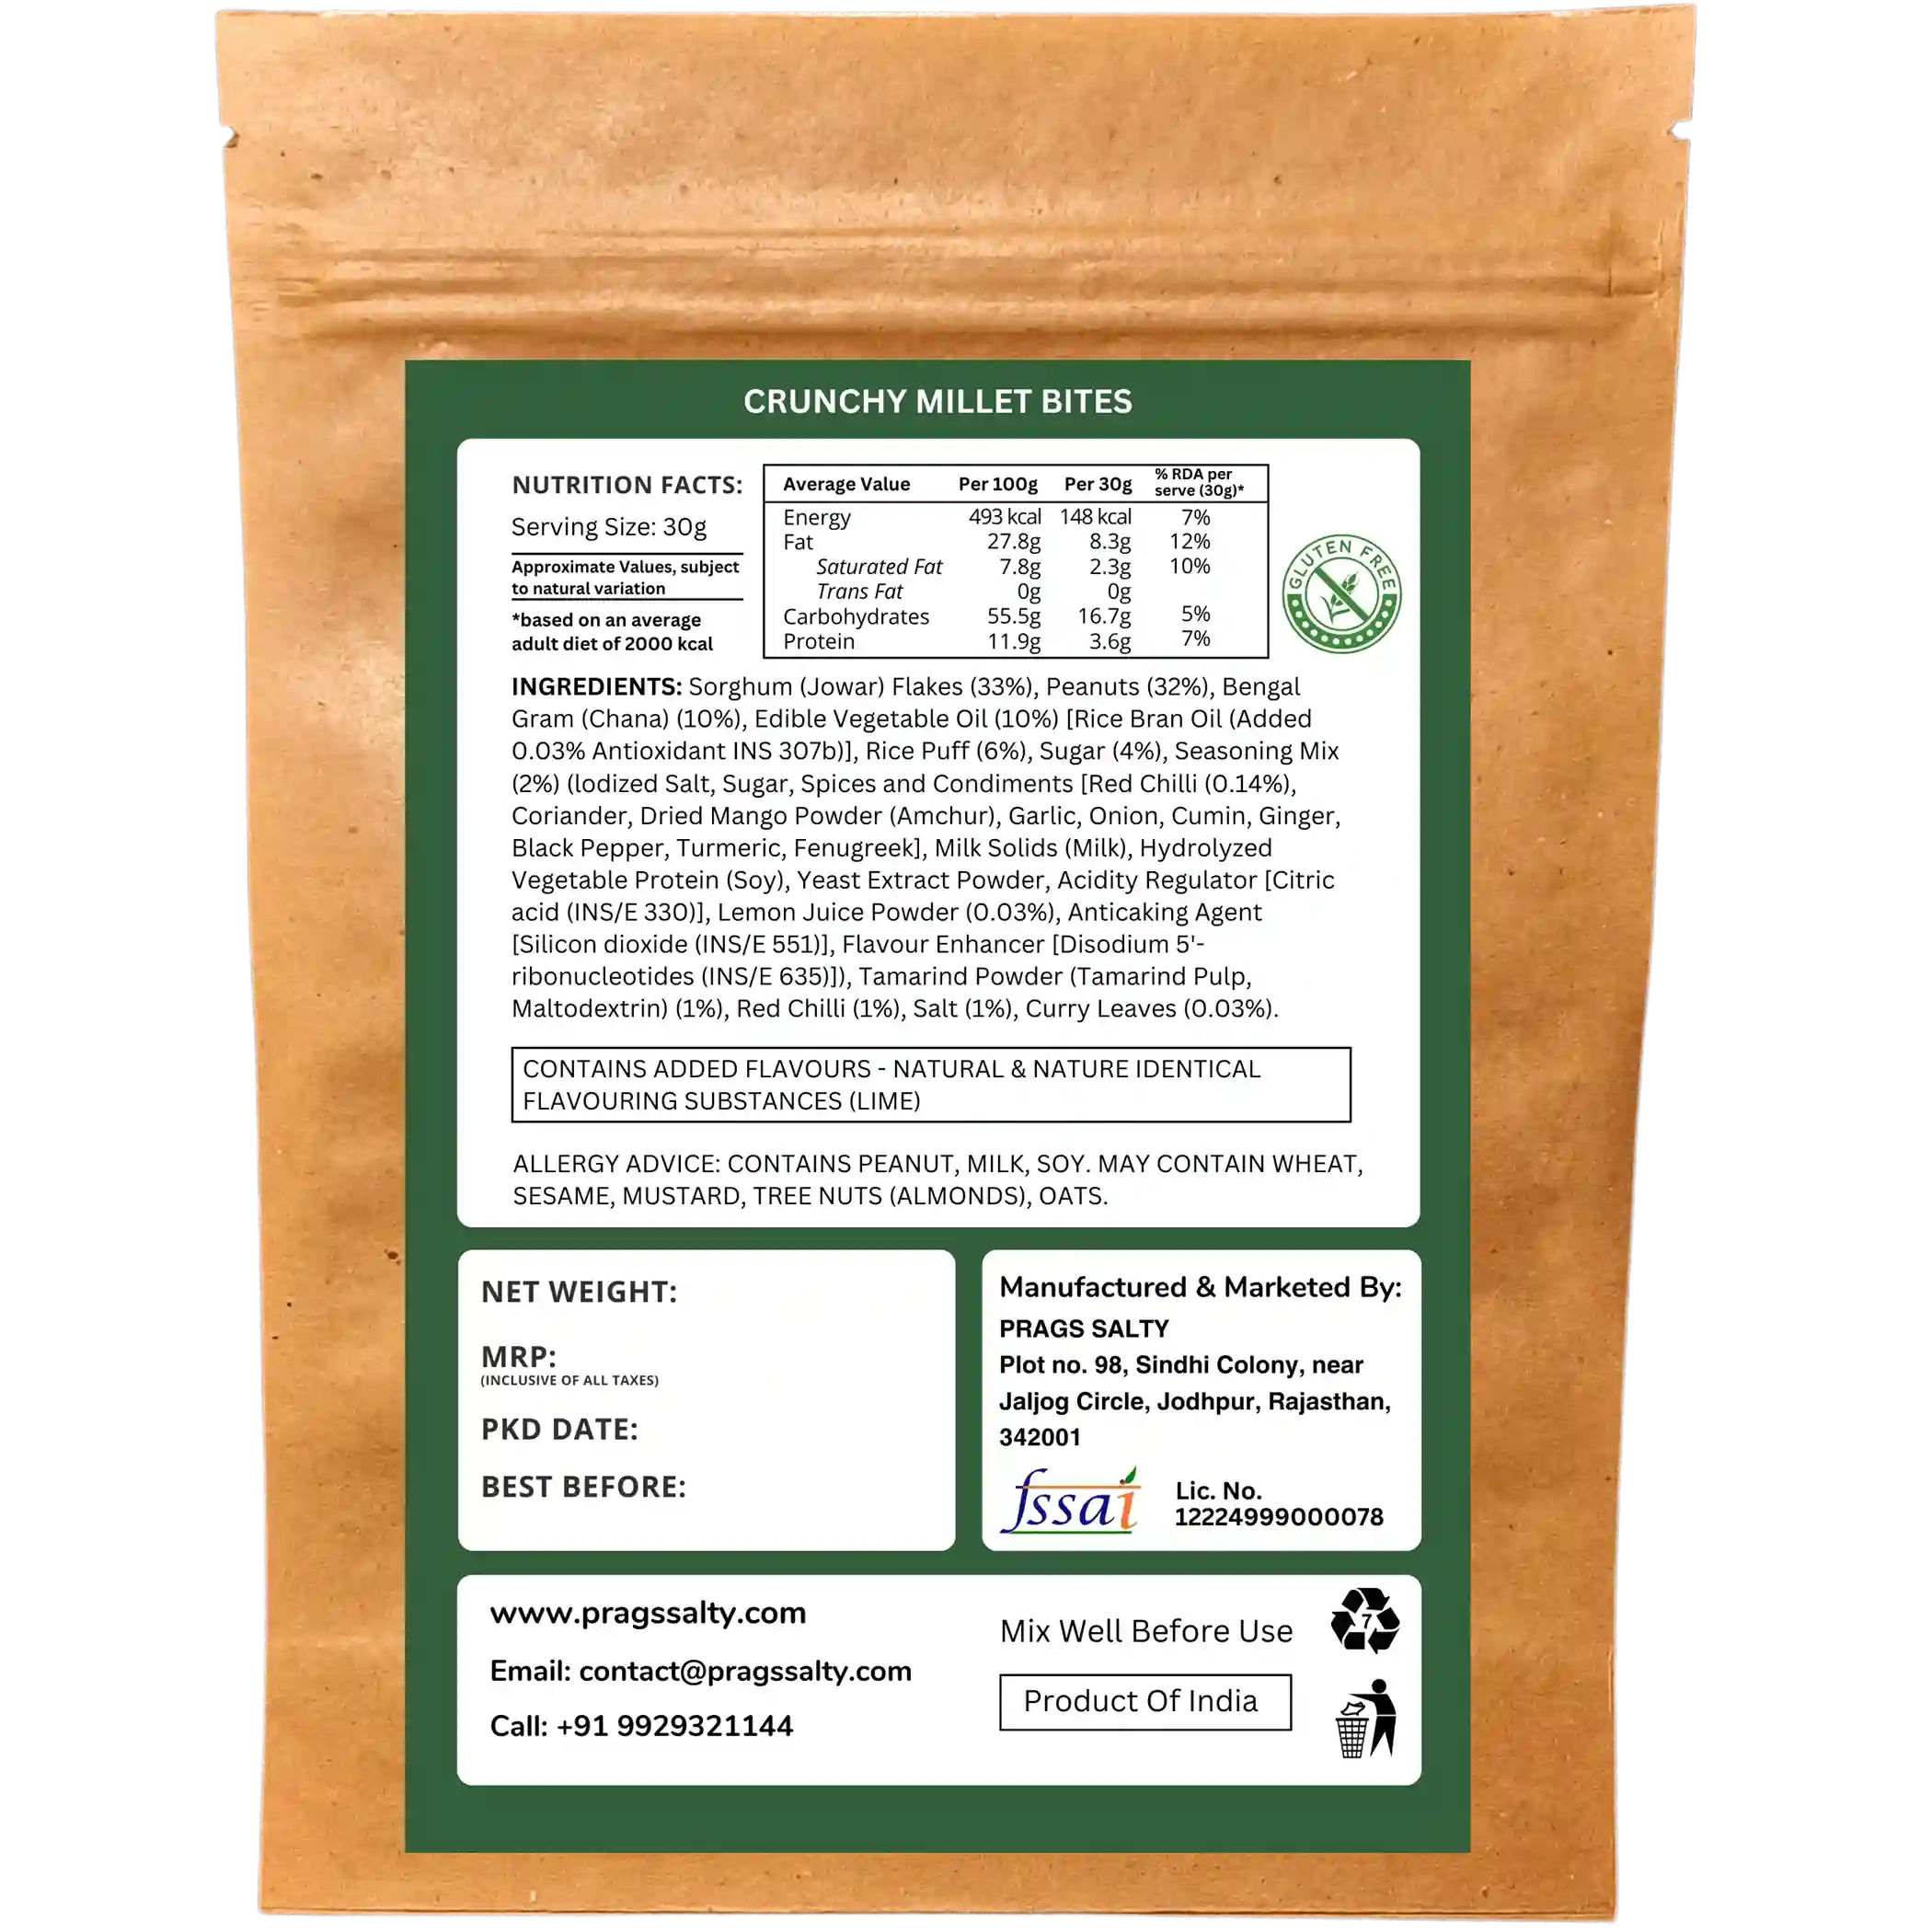 Package label - Crunchy Millet Bites